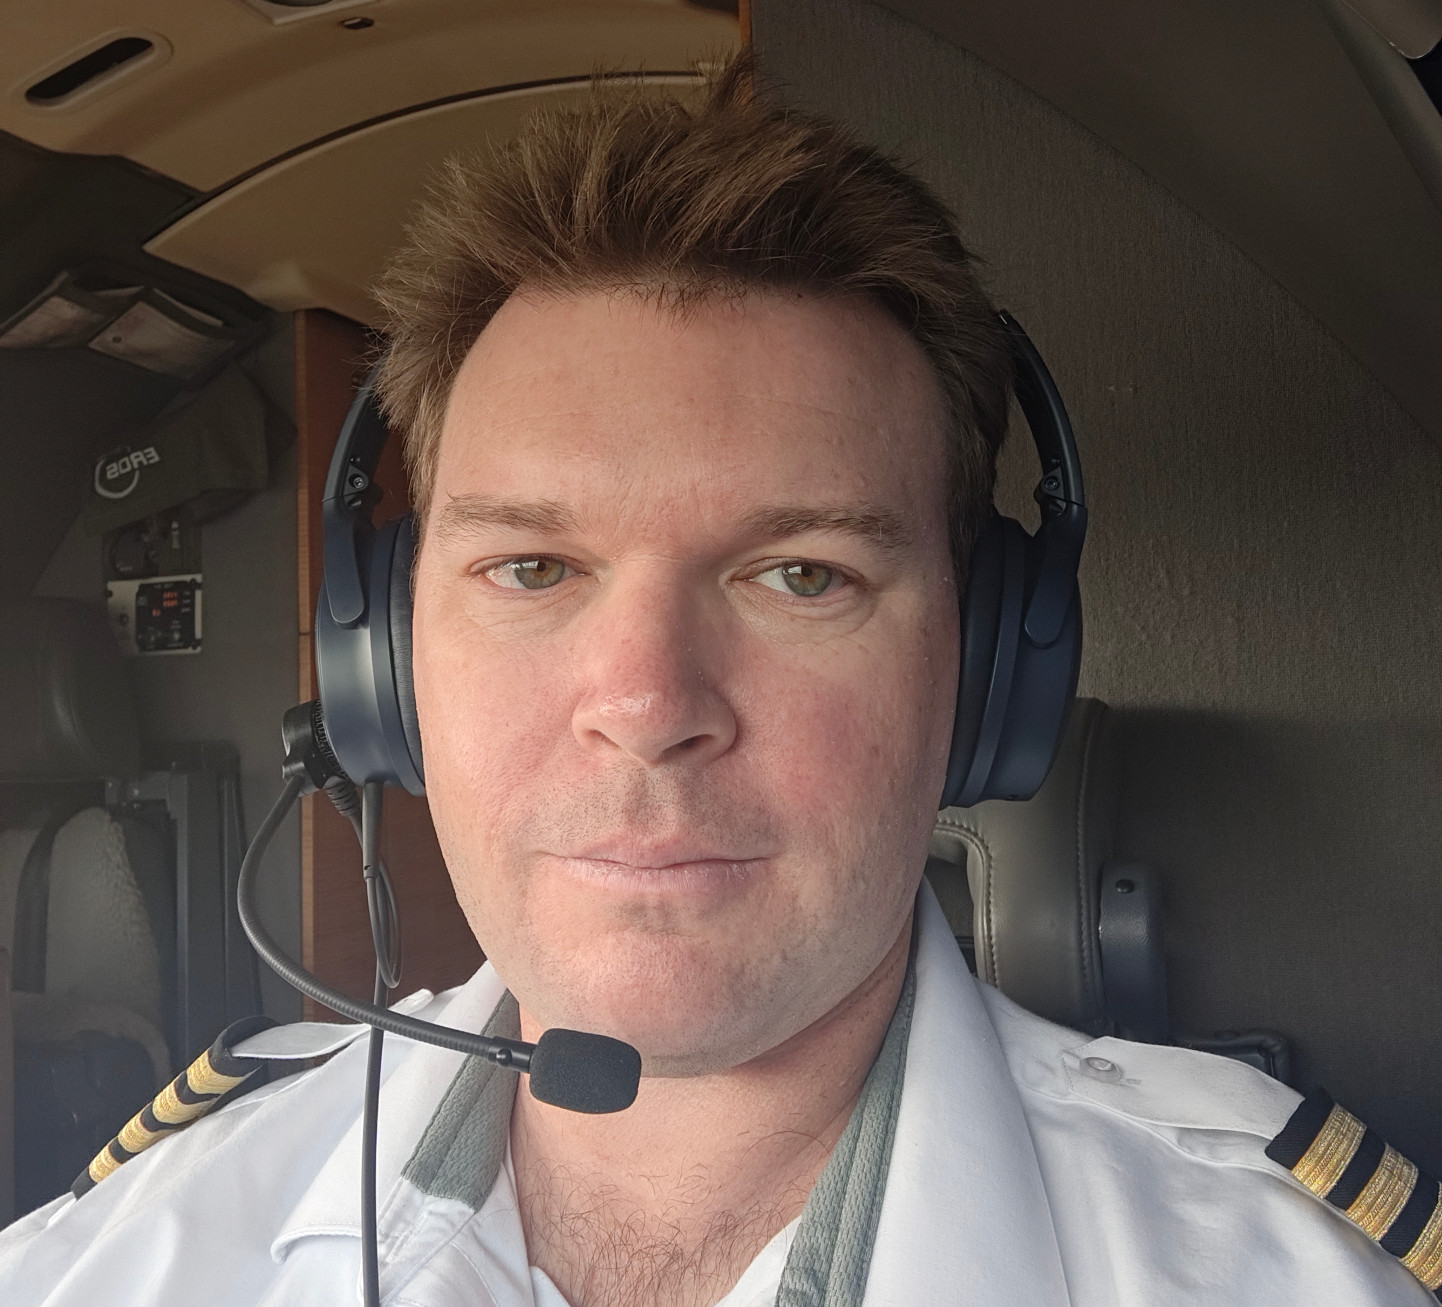 grant in cockpit